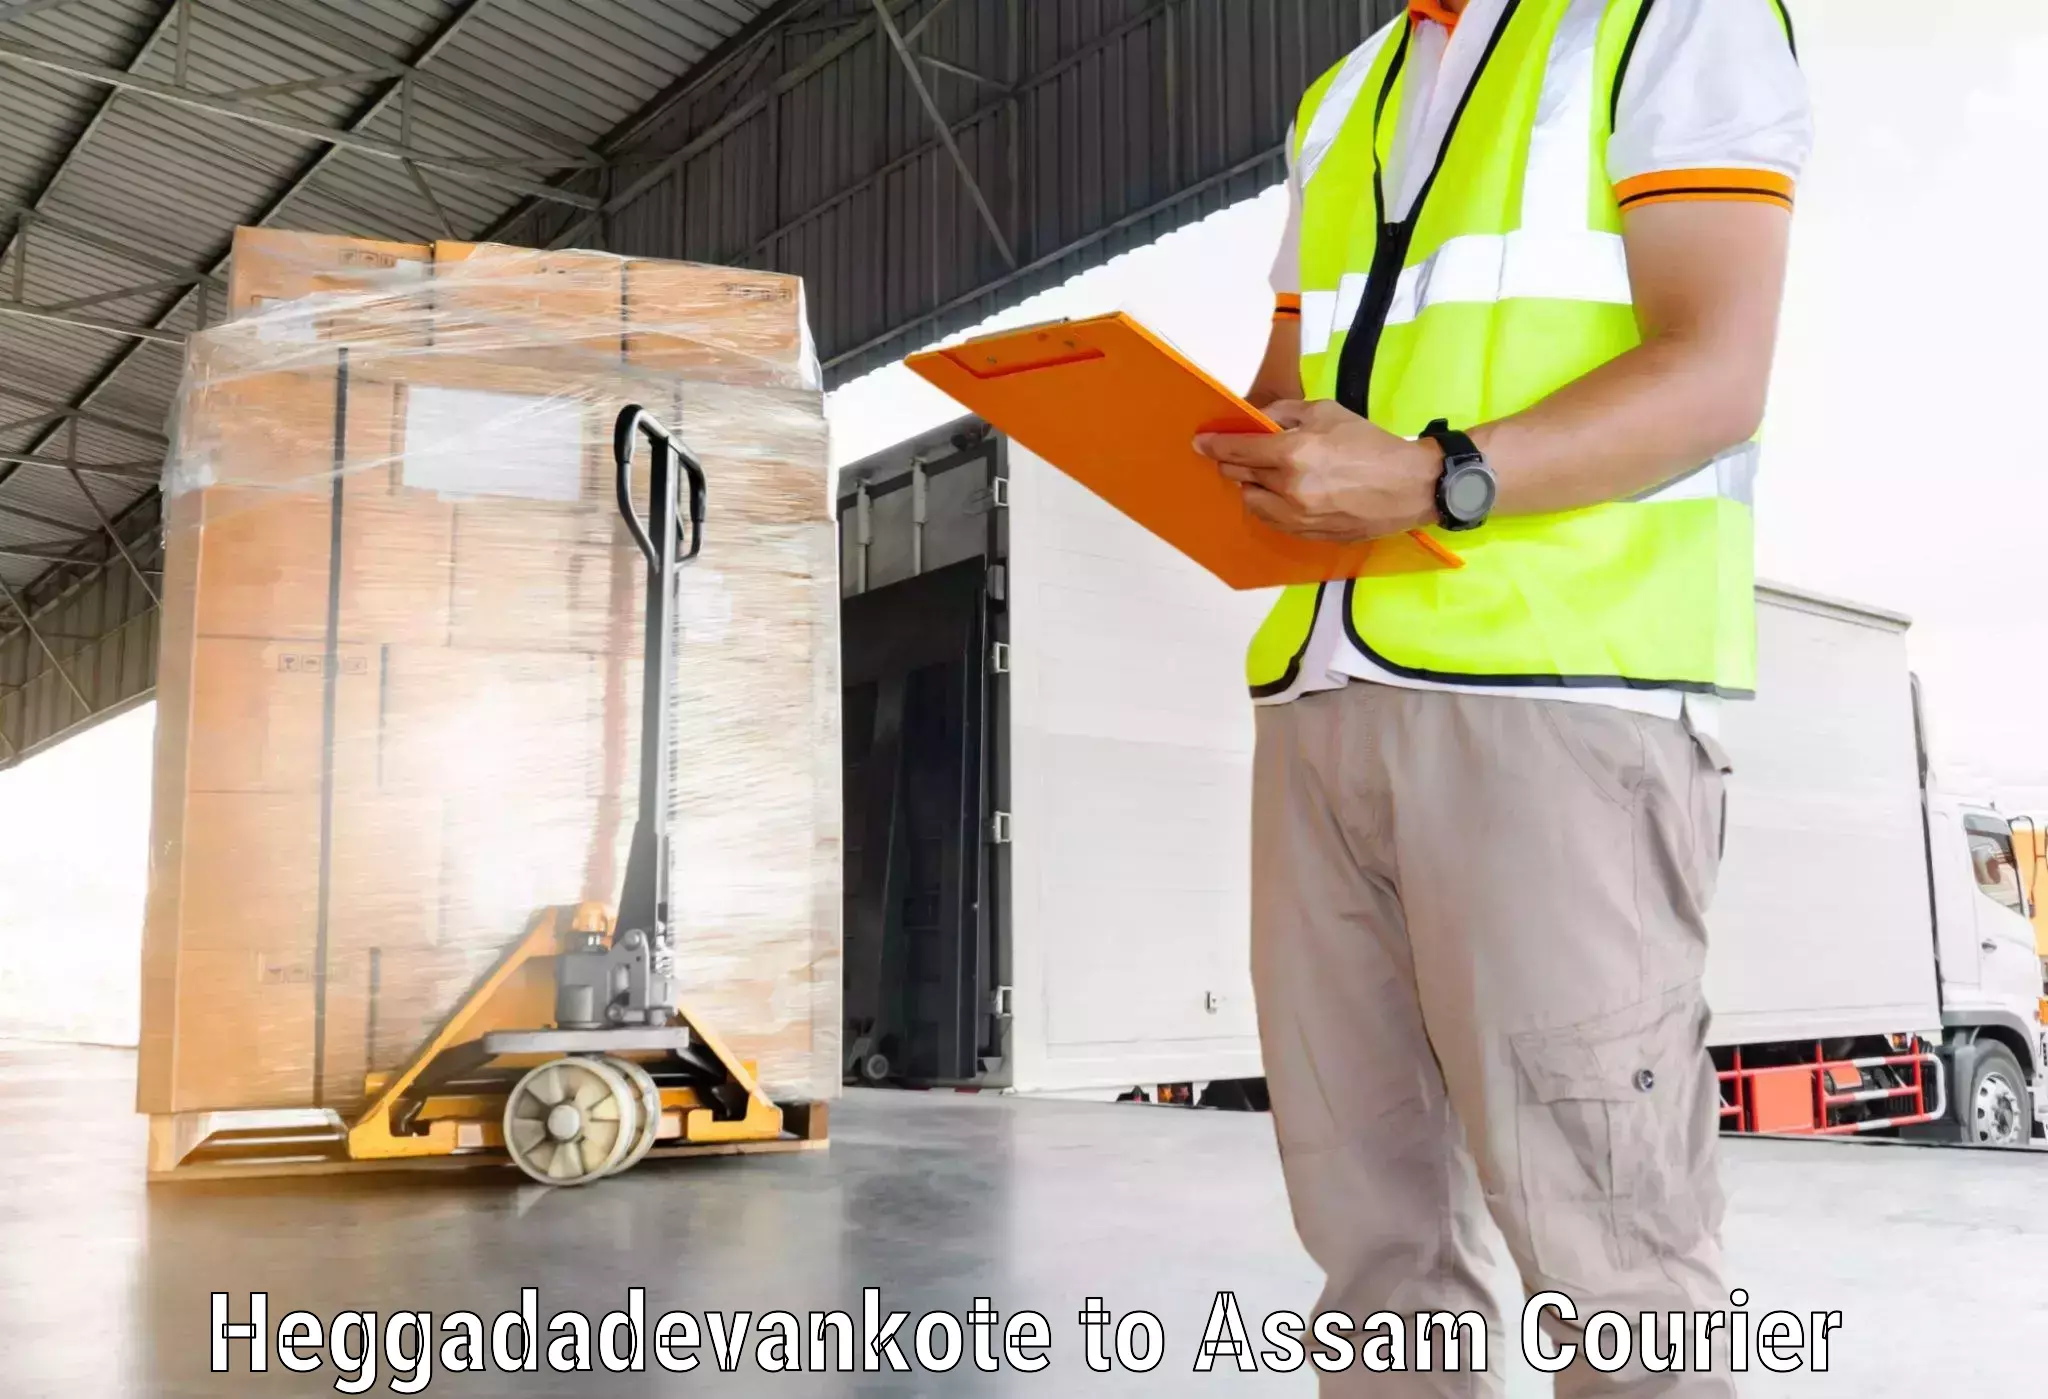 Express logistics providers Heggadadevankote to Kalgachia